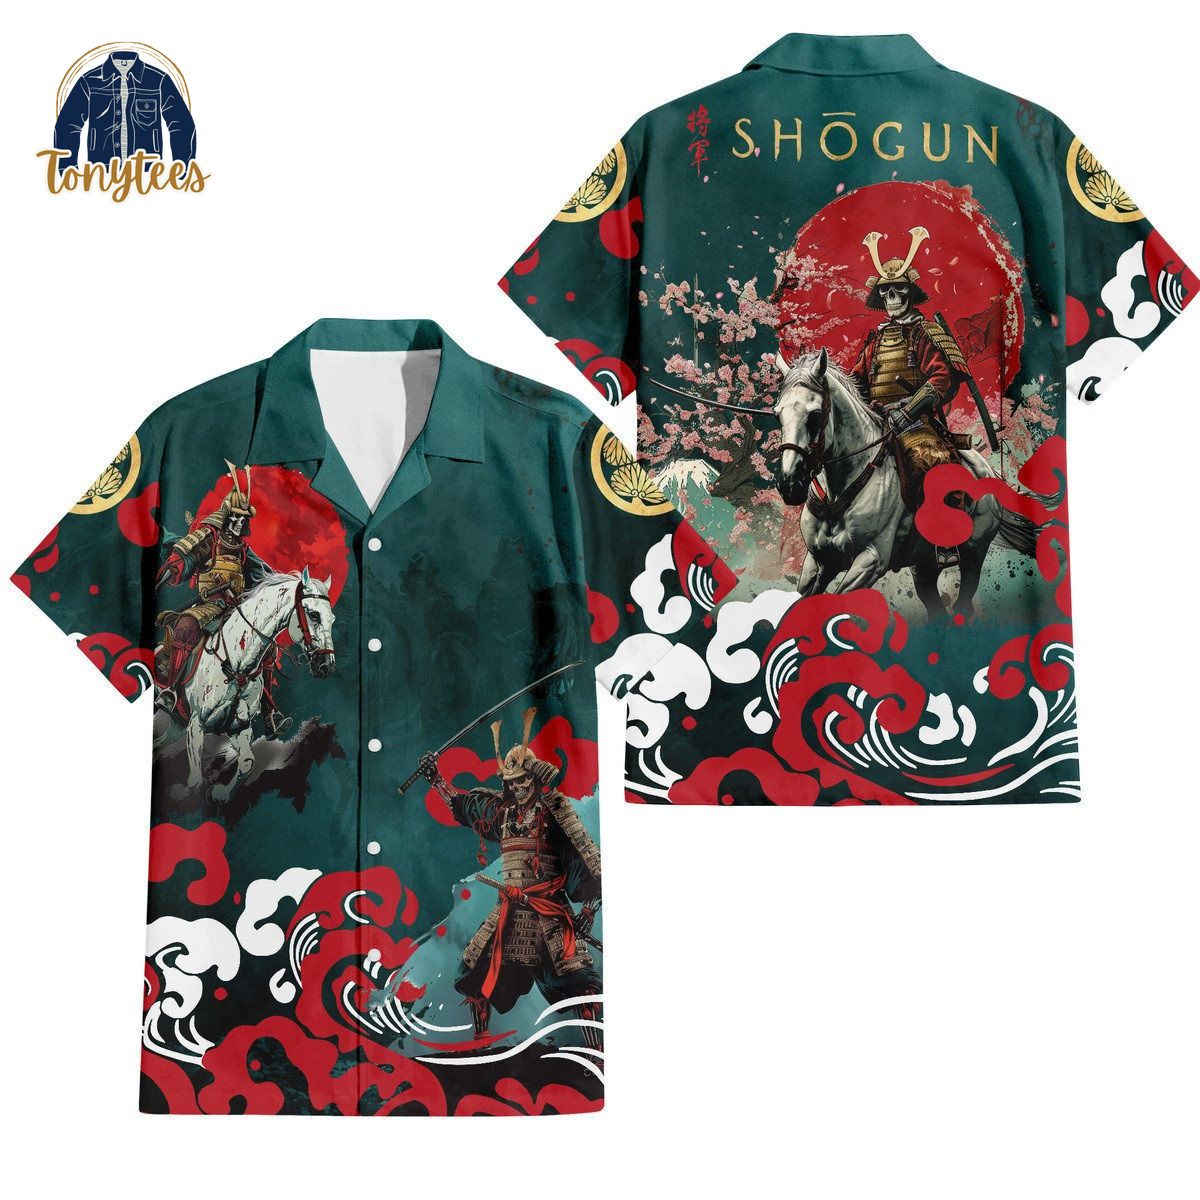 Shogun New Hawaiian Shirt